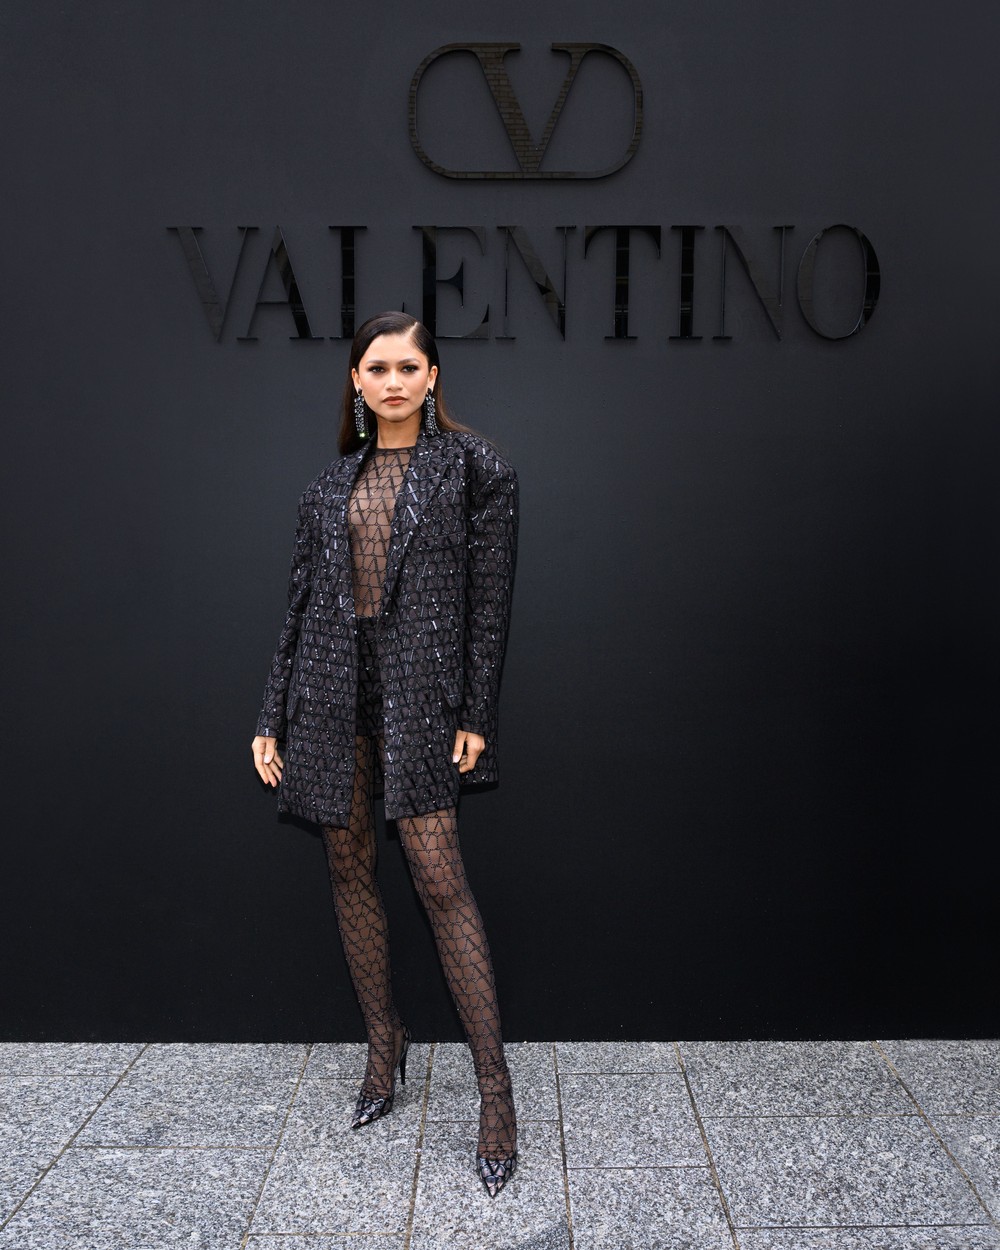 Добре знаем,че актрисата е лице на модния бранд и в повечето си изяви носи прекрасните тоалети на Valentino, докато участва в кампаниите, така че няма как да липсва на първия ред.